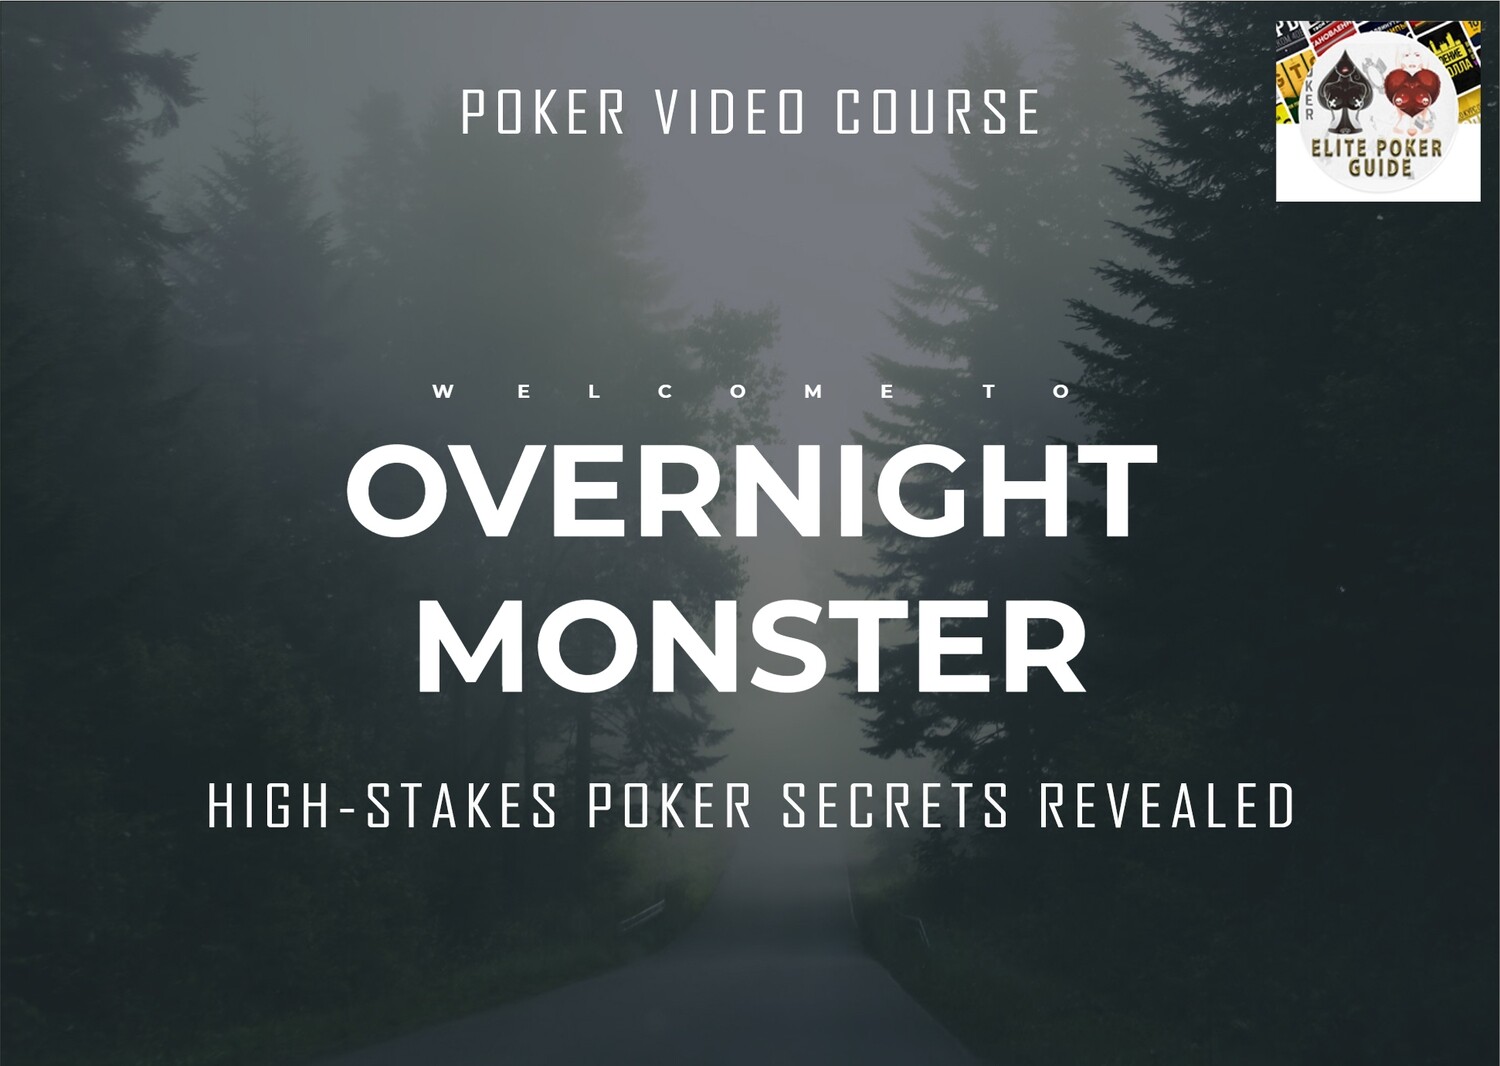 OVERNIGHT MONSTER:
HIGH-STAKES POKER SECRETS REVEALED - Poker Video Course!